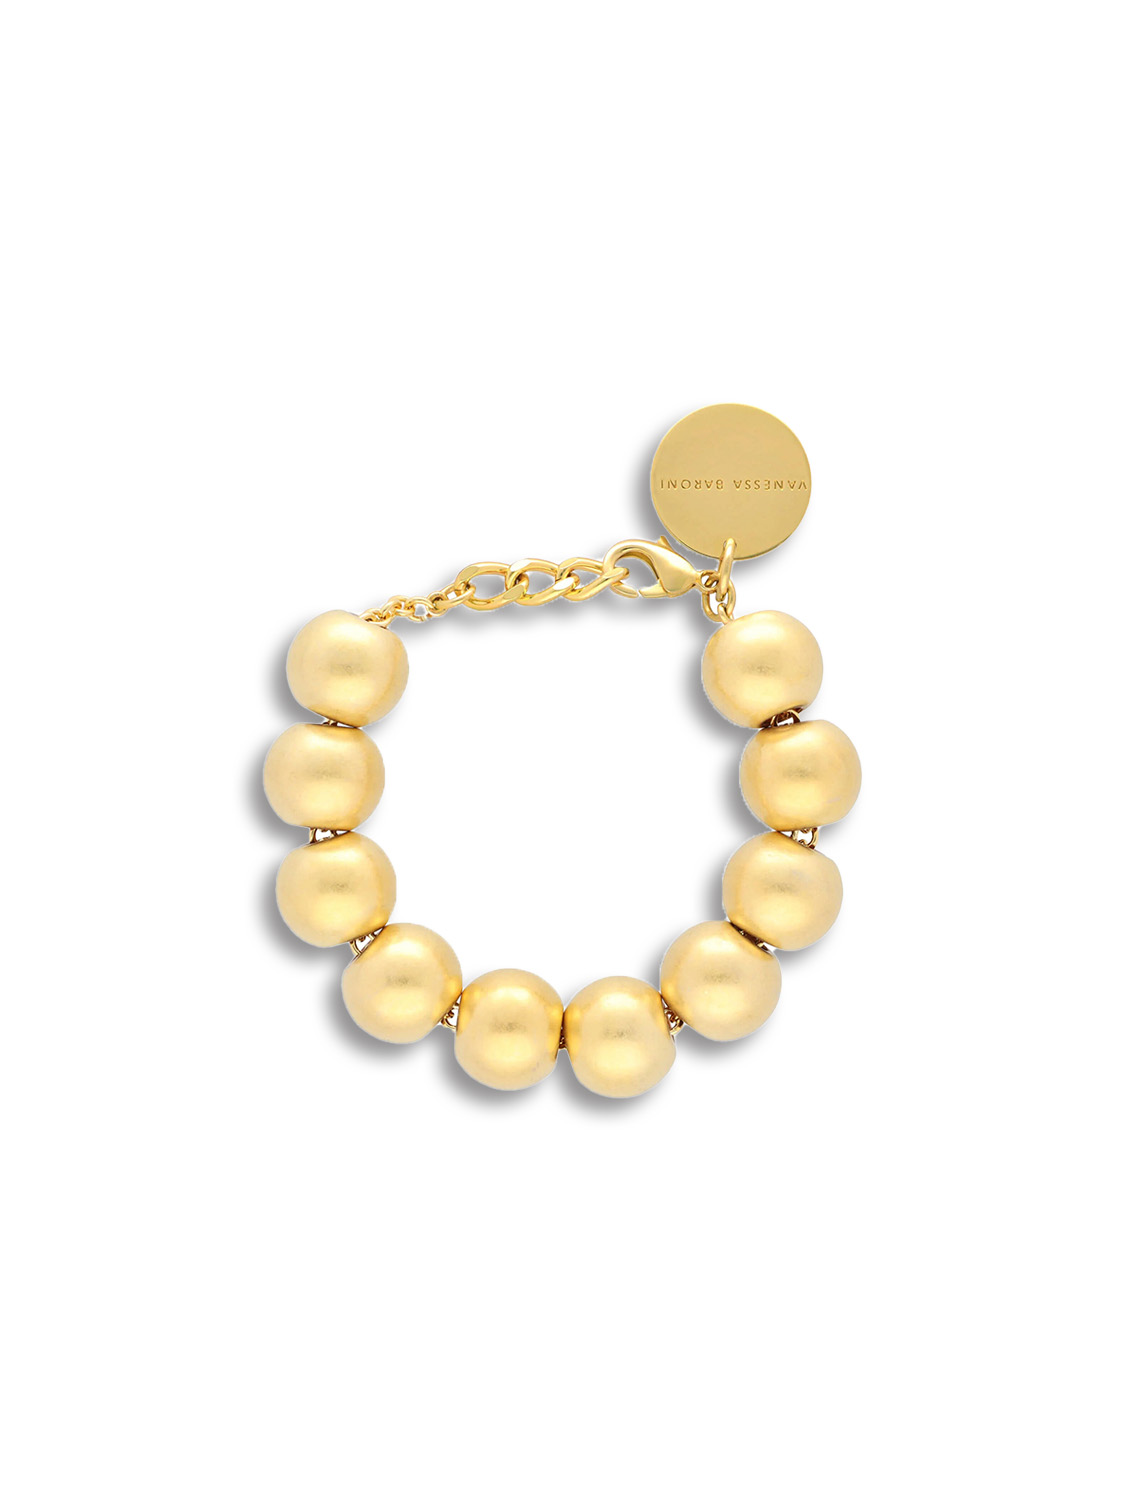 Vanessa Baroni Beads Bracelet – Armband in Kugelndesign gold One Size